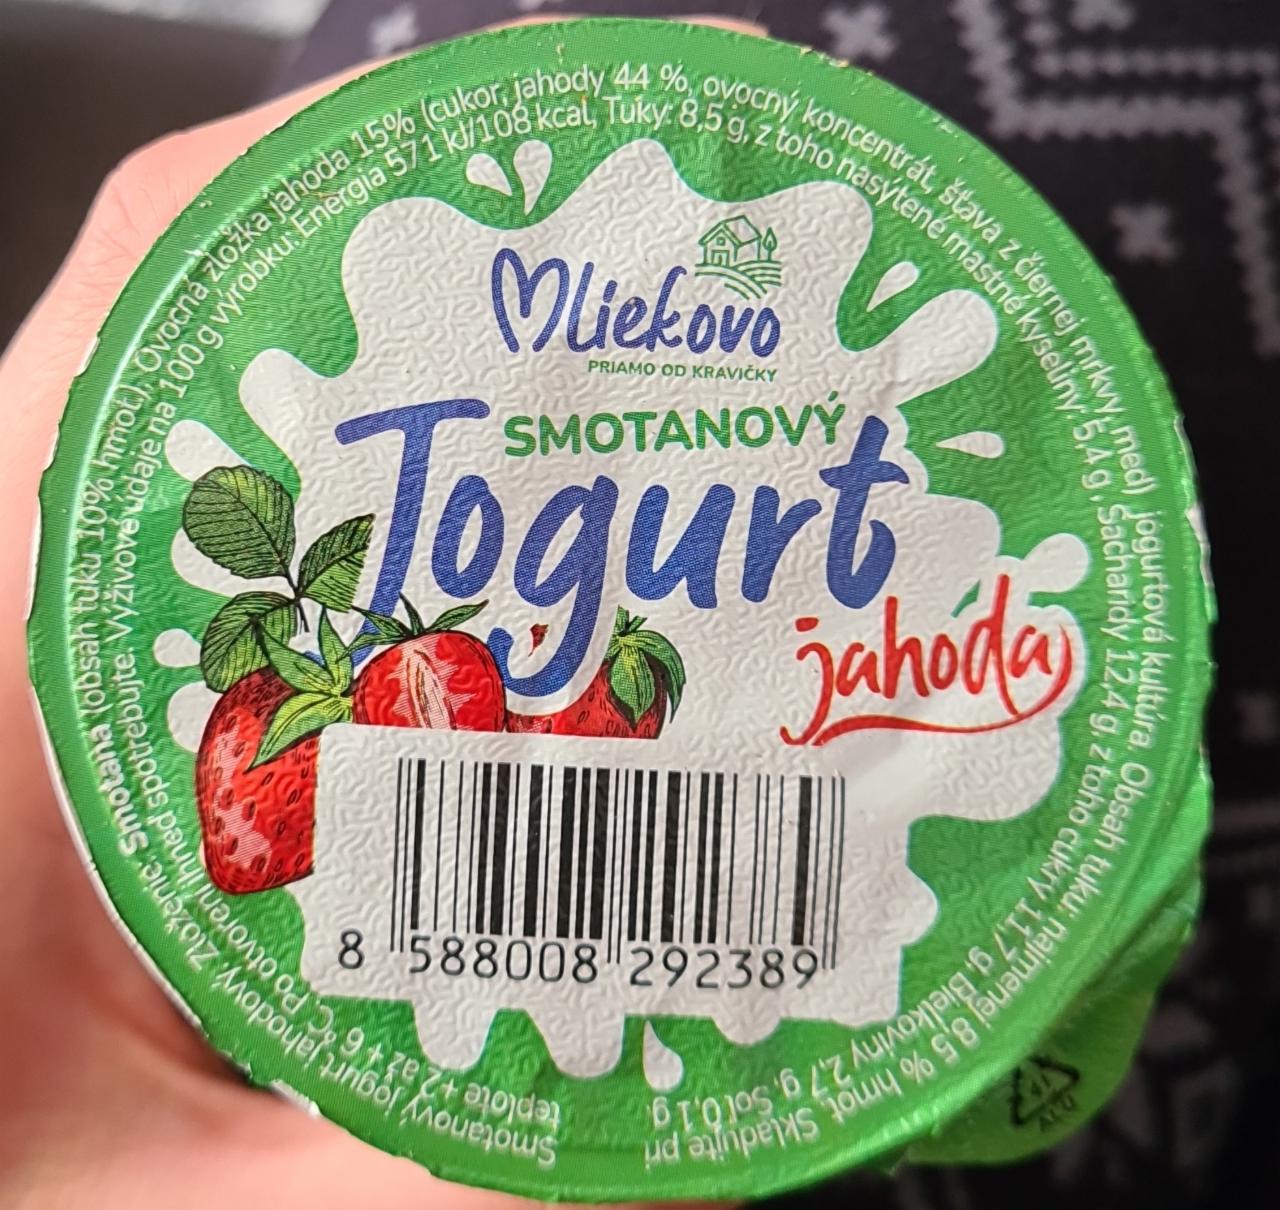 Fotografie - Smotanový jogurt jahoda Mliekovo